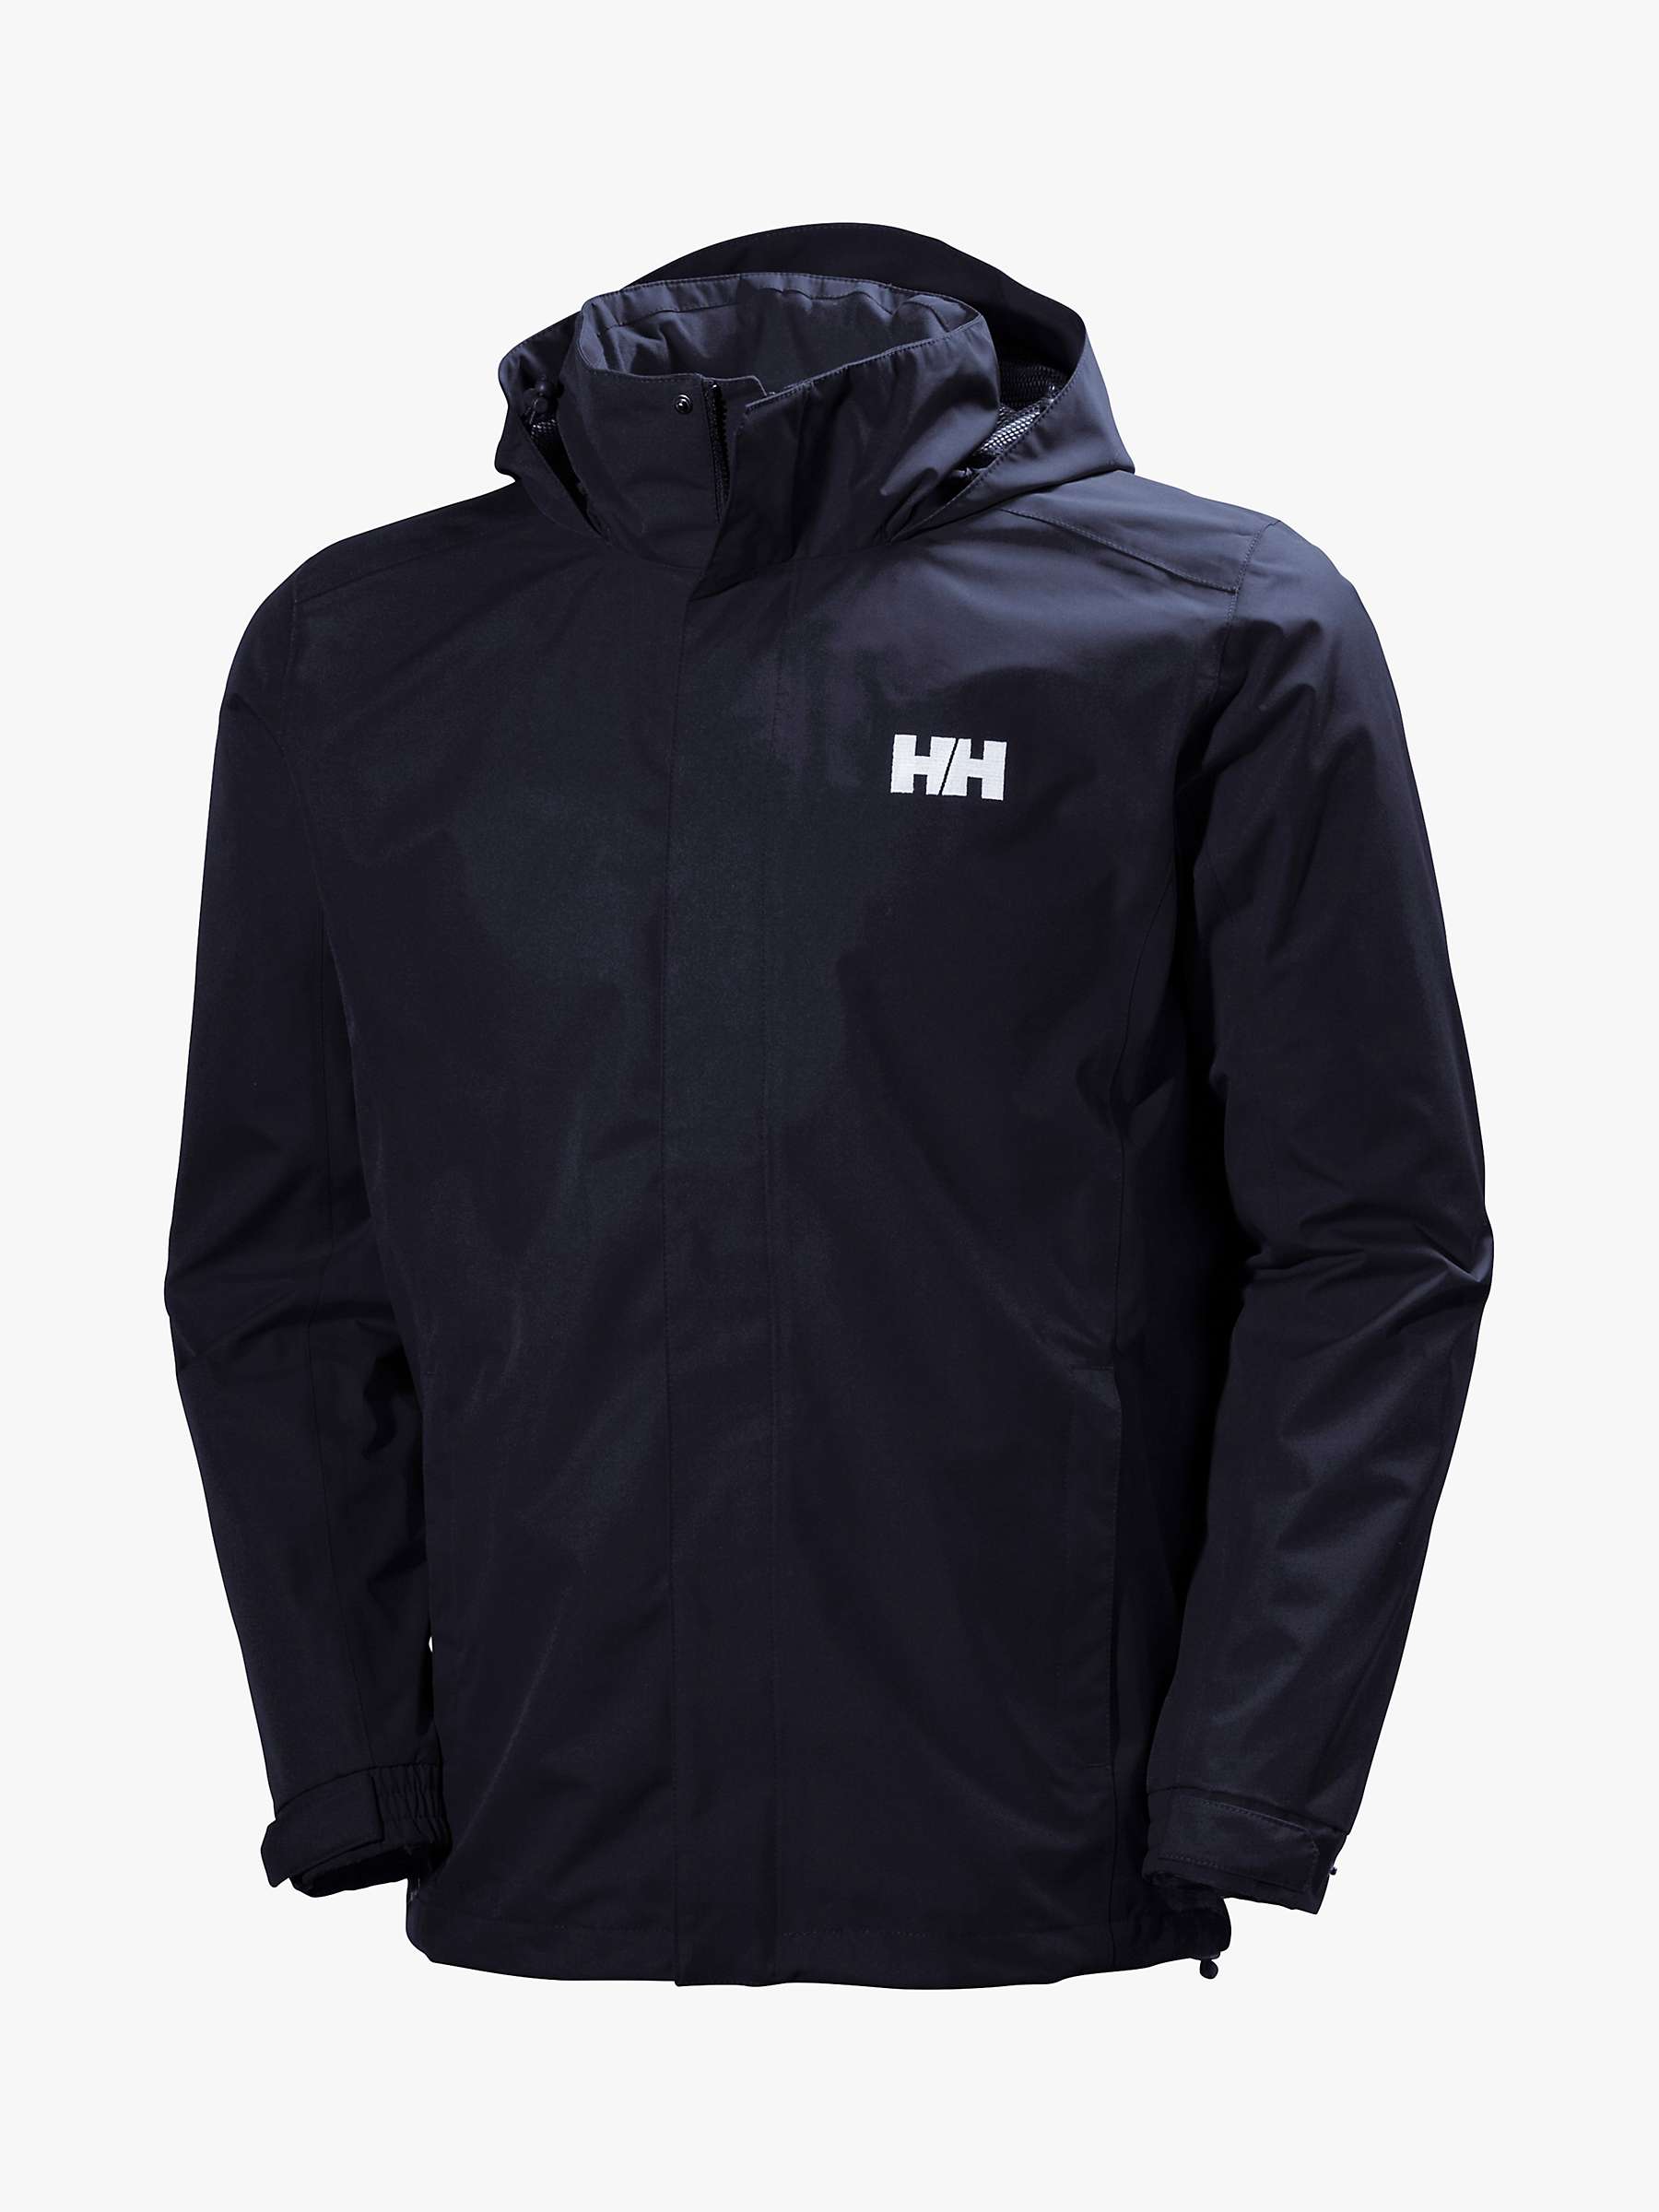 Buy Helly Hansen Dubliner Men's Waterproof Jacket, Navy Online at johnlewis.com